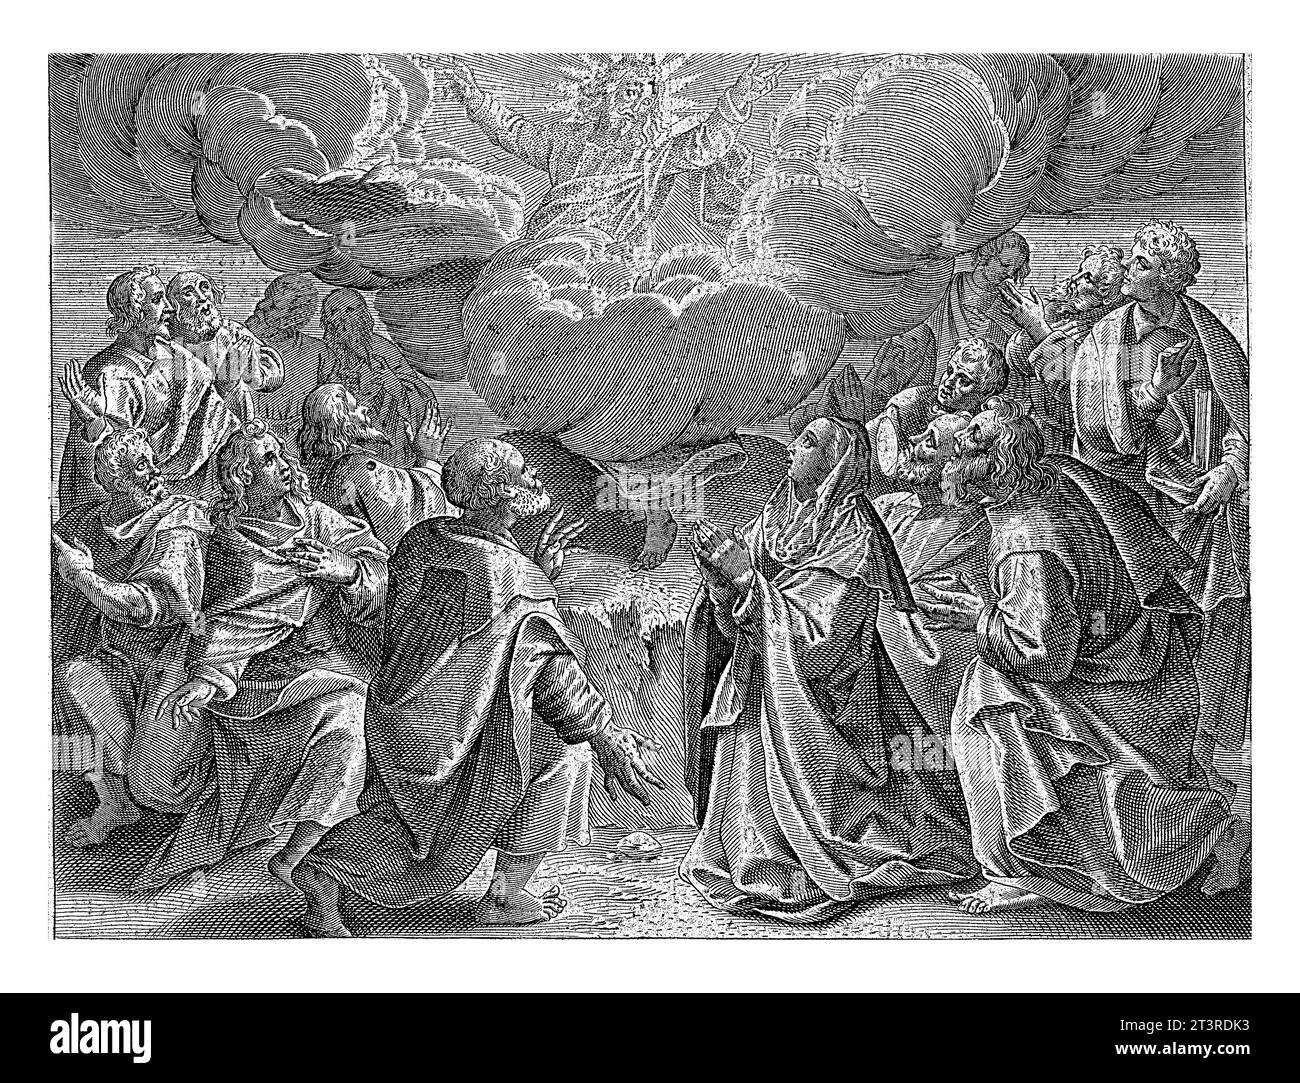 Ascensione di Cristo, Jan Collaert (II), dopo Maerten de Vos, 1597 Cristo è portato in cielo in una nuvola. Intorno a lui ci sono i suoi discepoli e sua madre Foto Stock